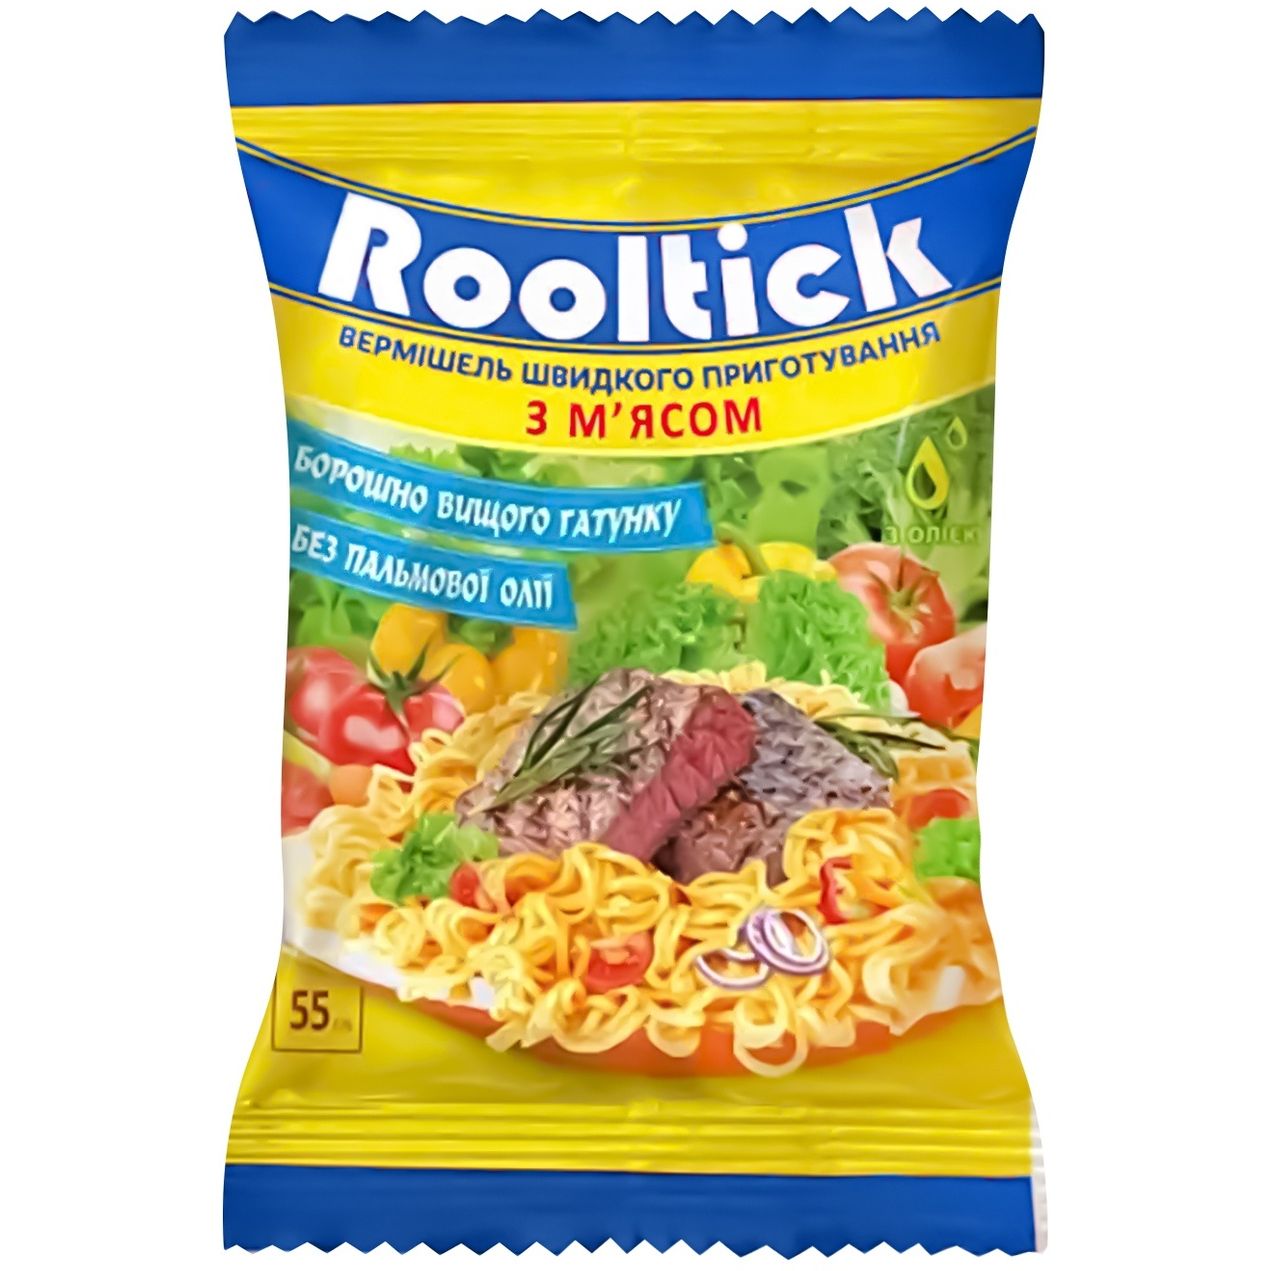 Вермишель быстрого приготовления Rooltick со вкусом мяса 55 г - фото 1